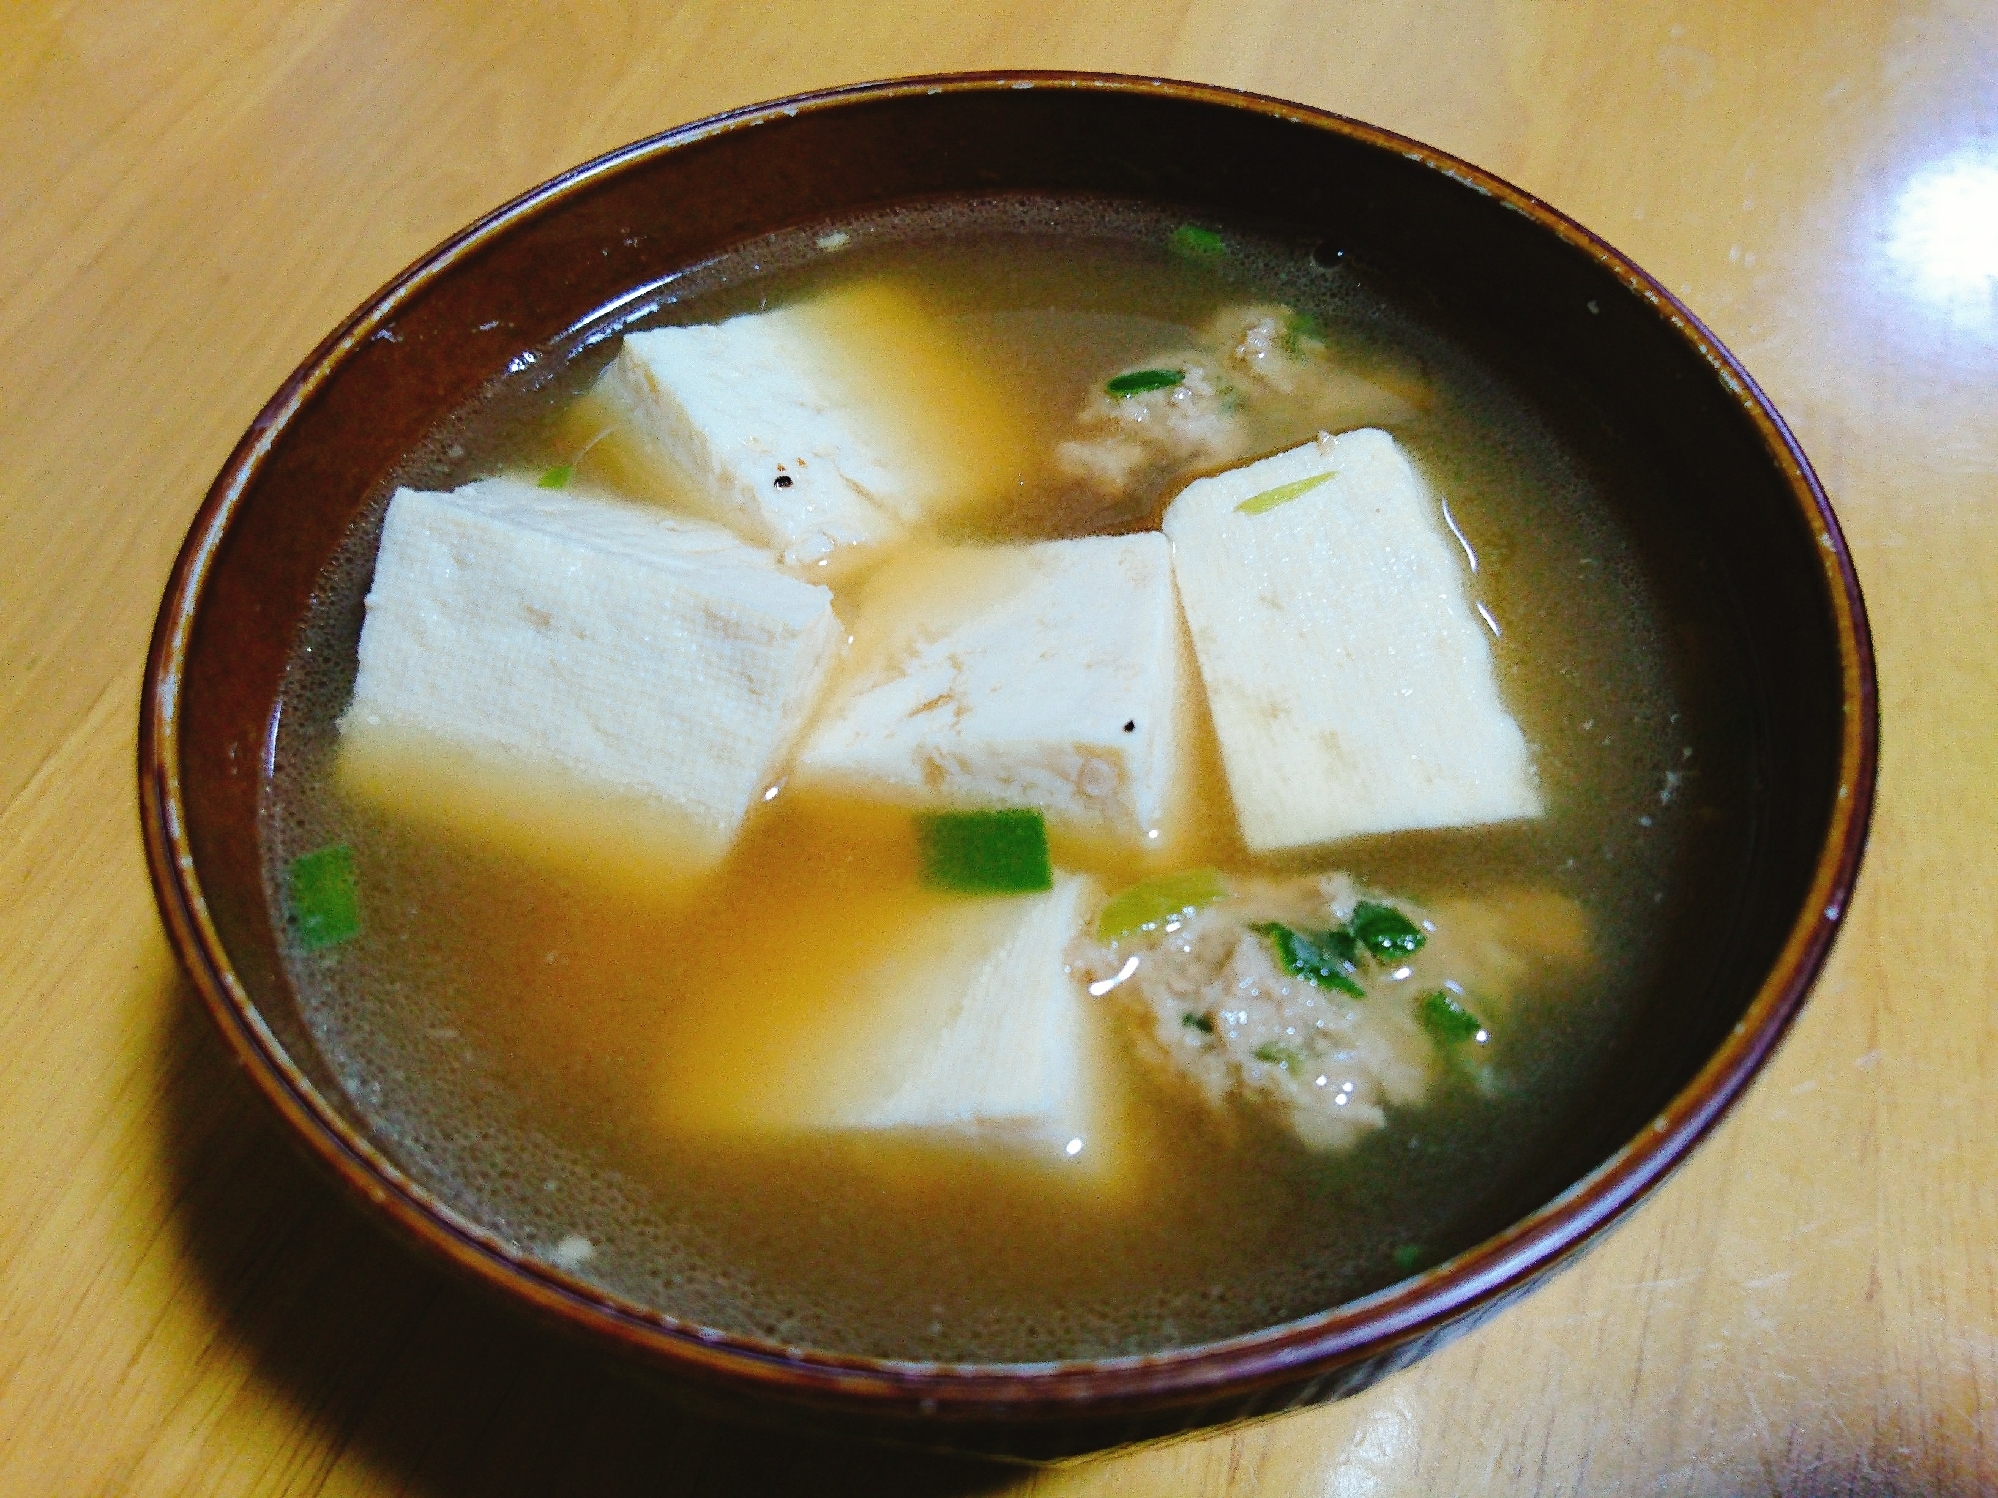 餃子のタネと豆腐のさっぱりスープ